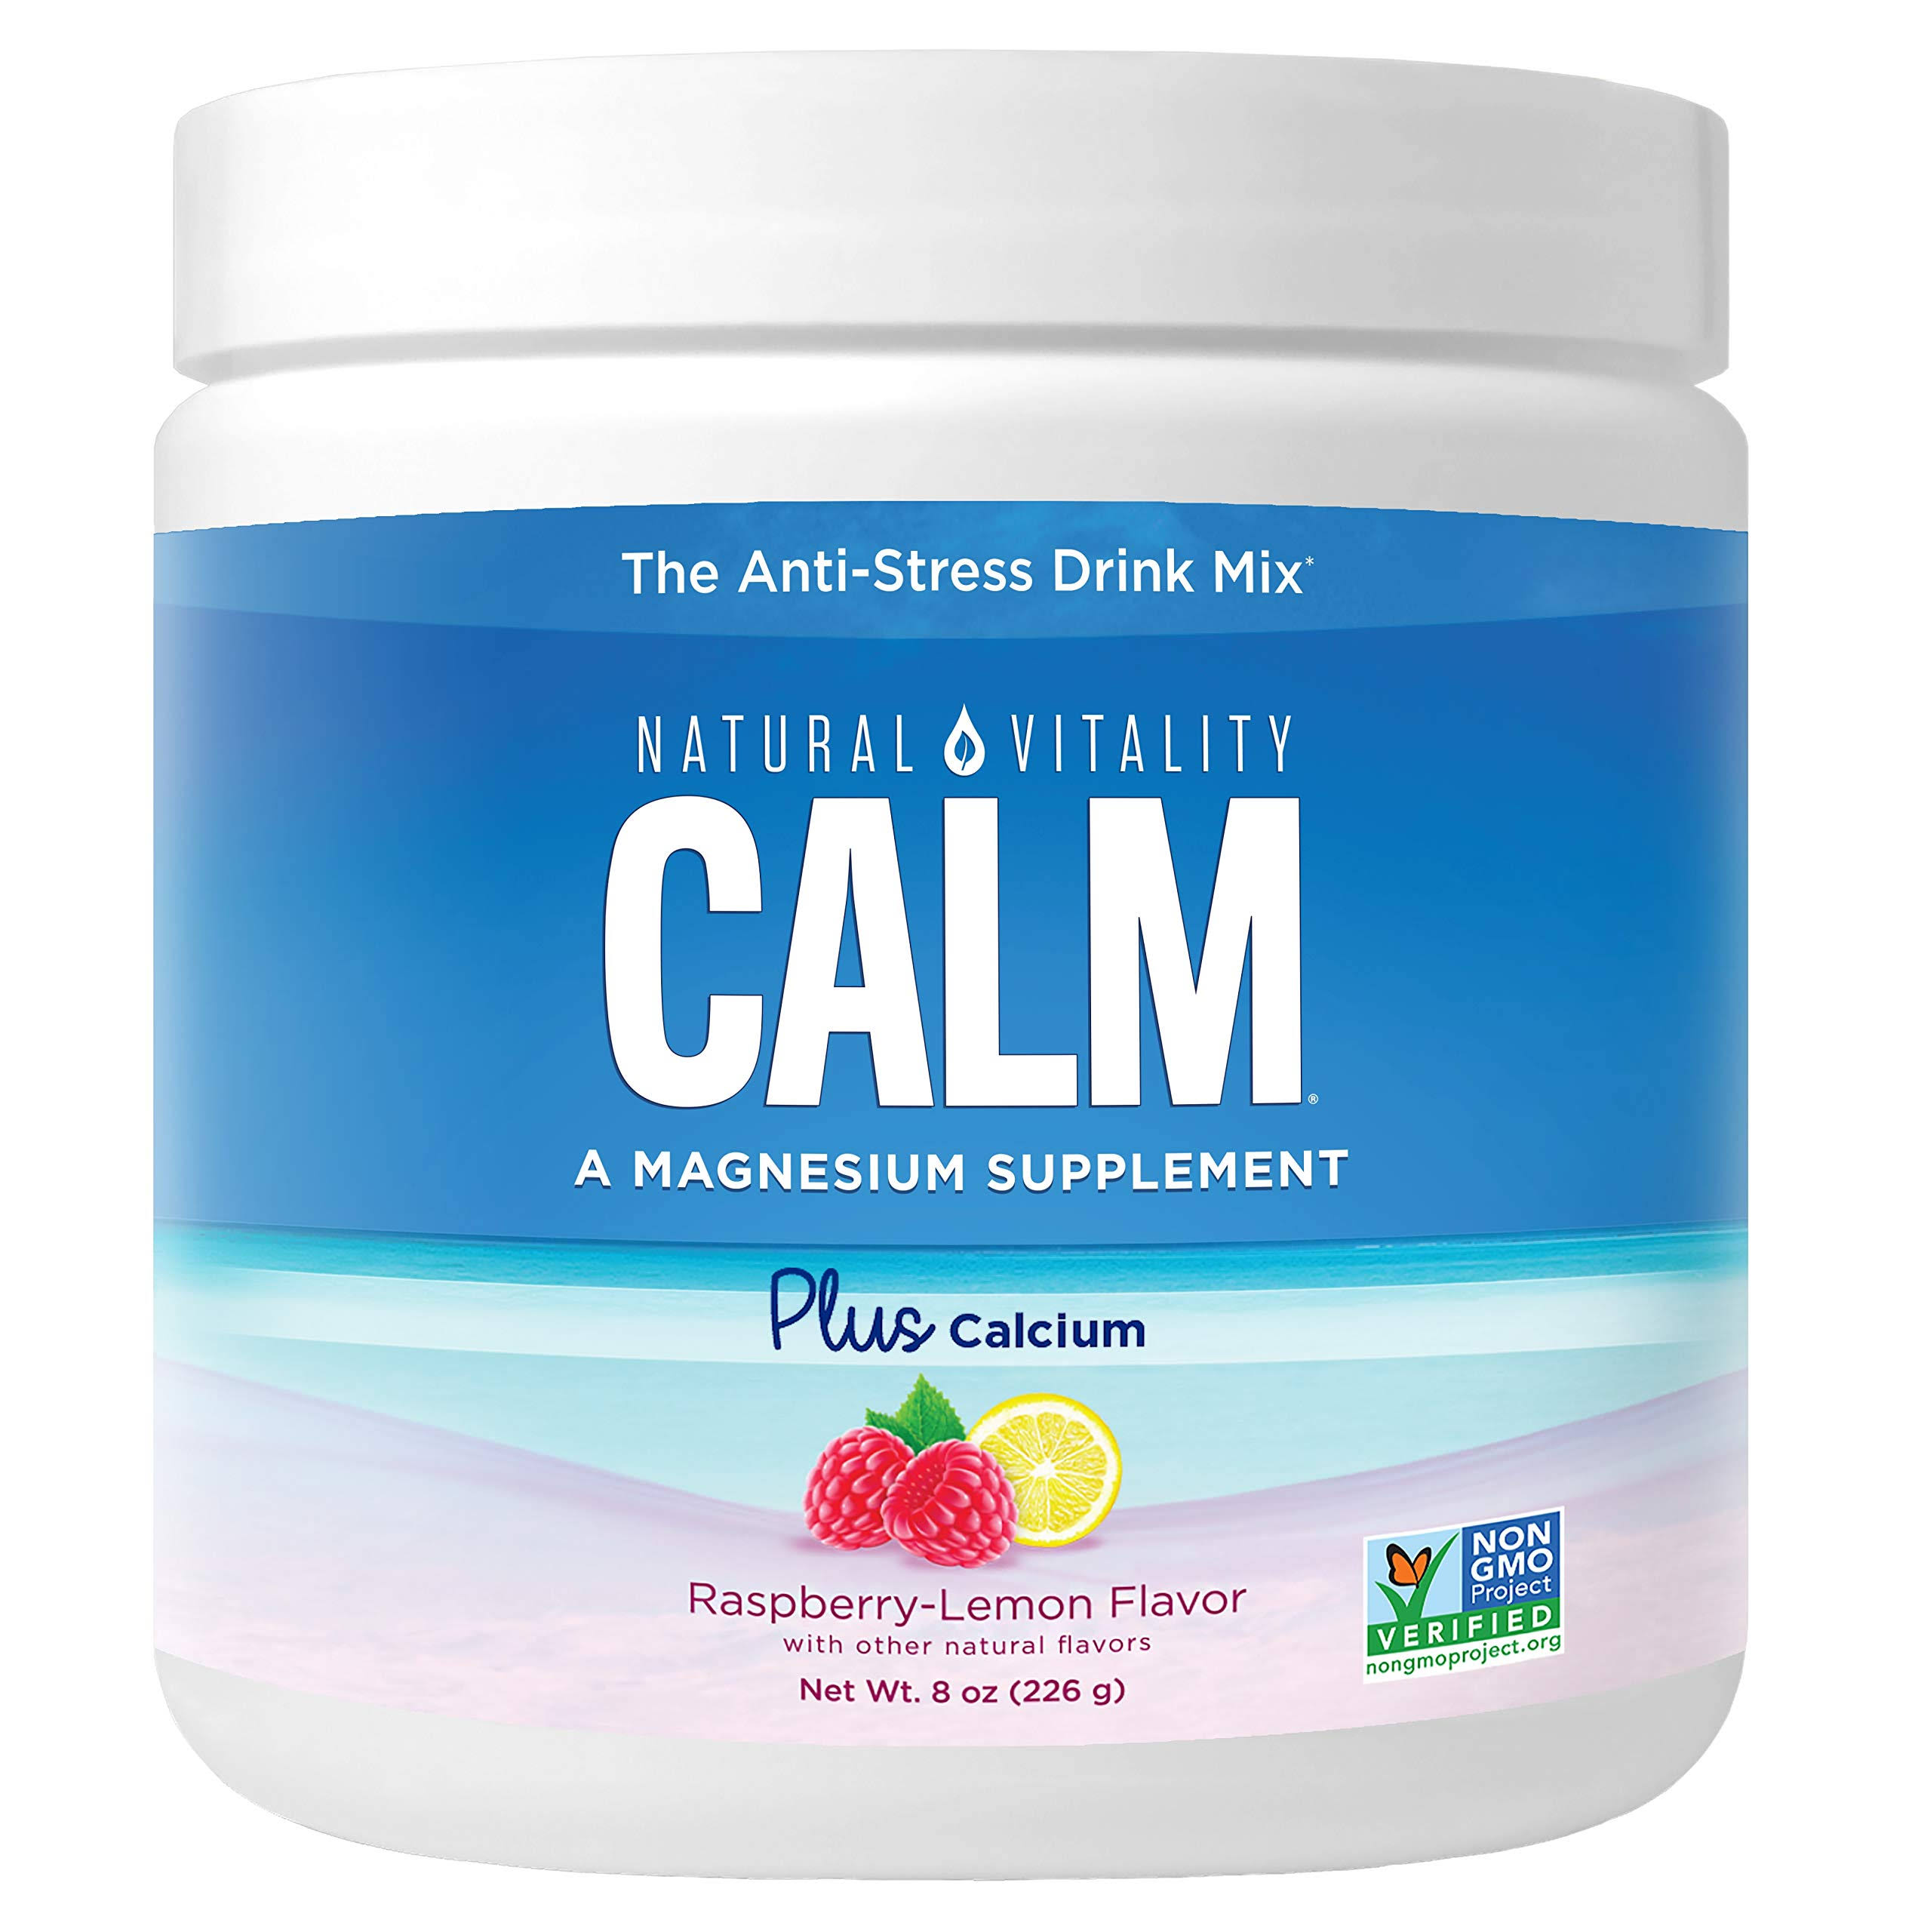 Natural Vitality Calm Magnesium Plus Calcium Raspberry Lemon 8 oz